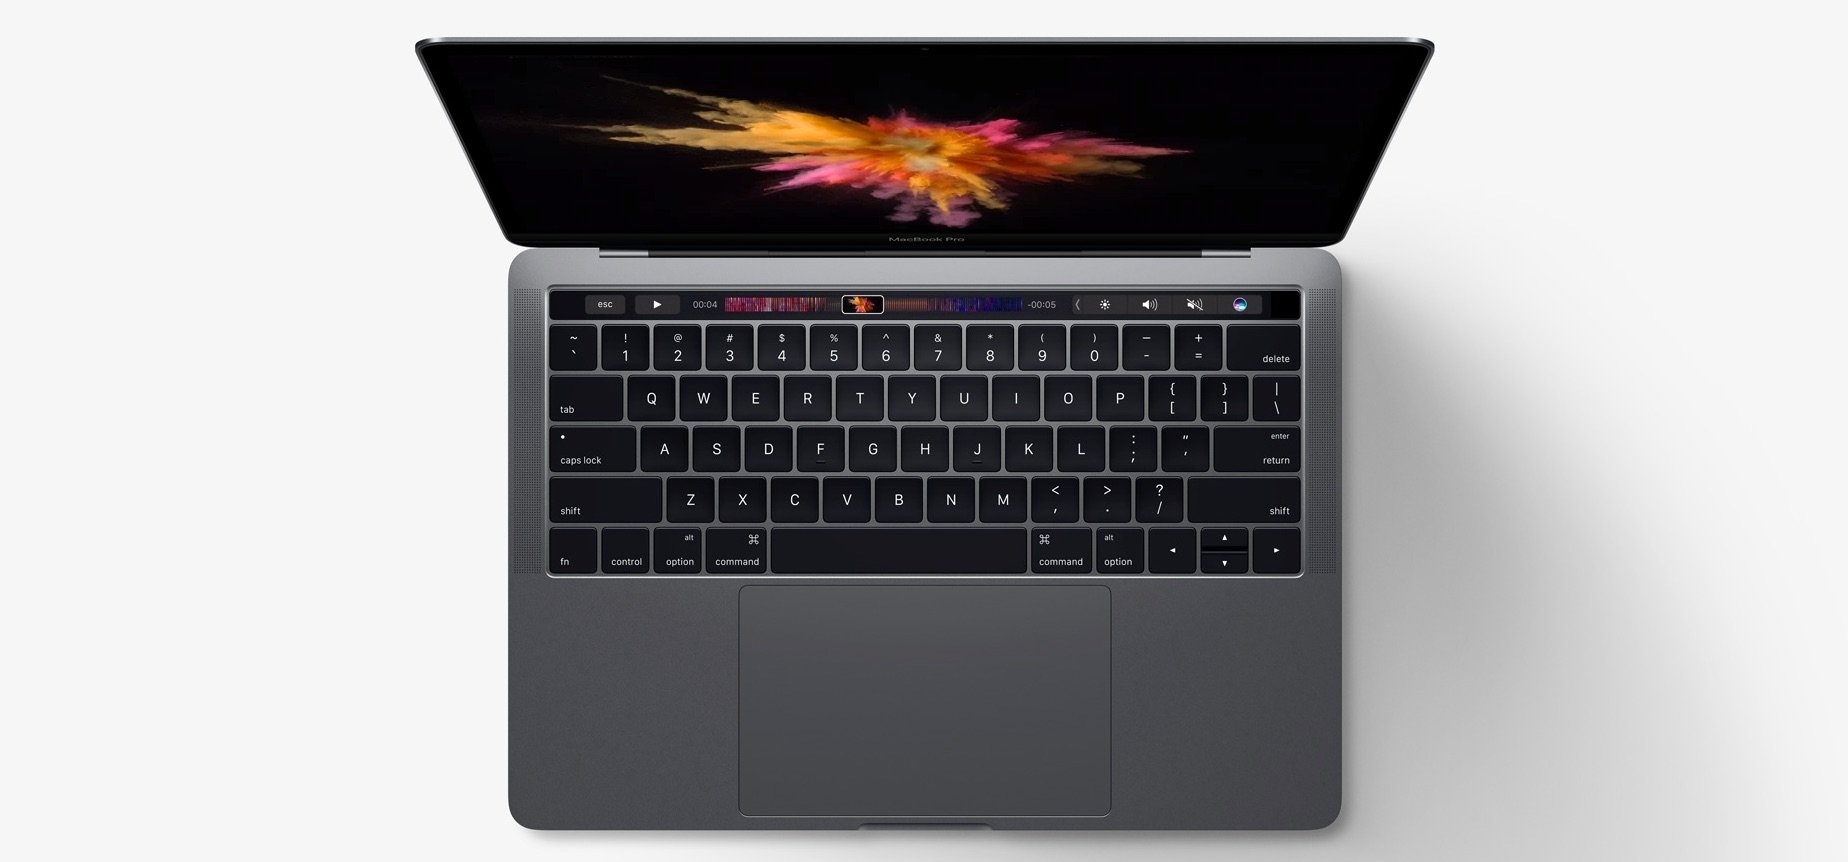 999 USD MacBook zur WWDC 18: 13-Zoll MacBook Pro jetzt mit neuem Lieferzeitpunkt 1